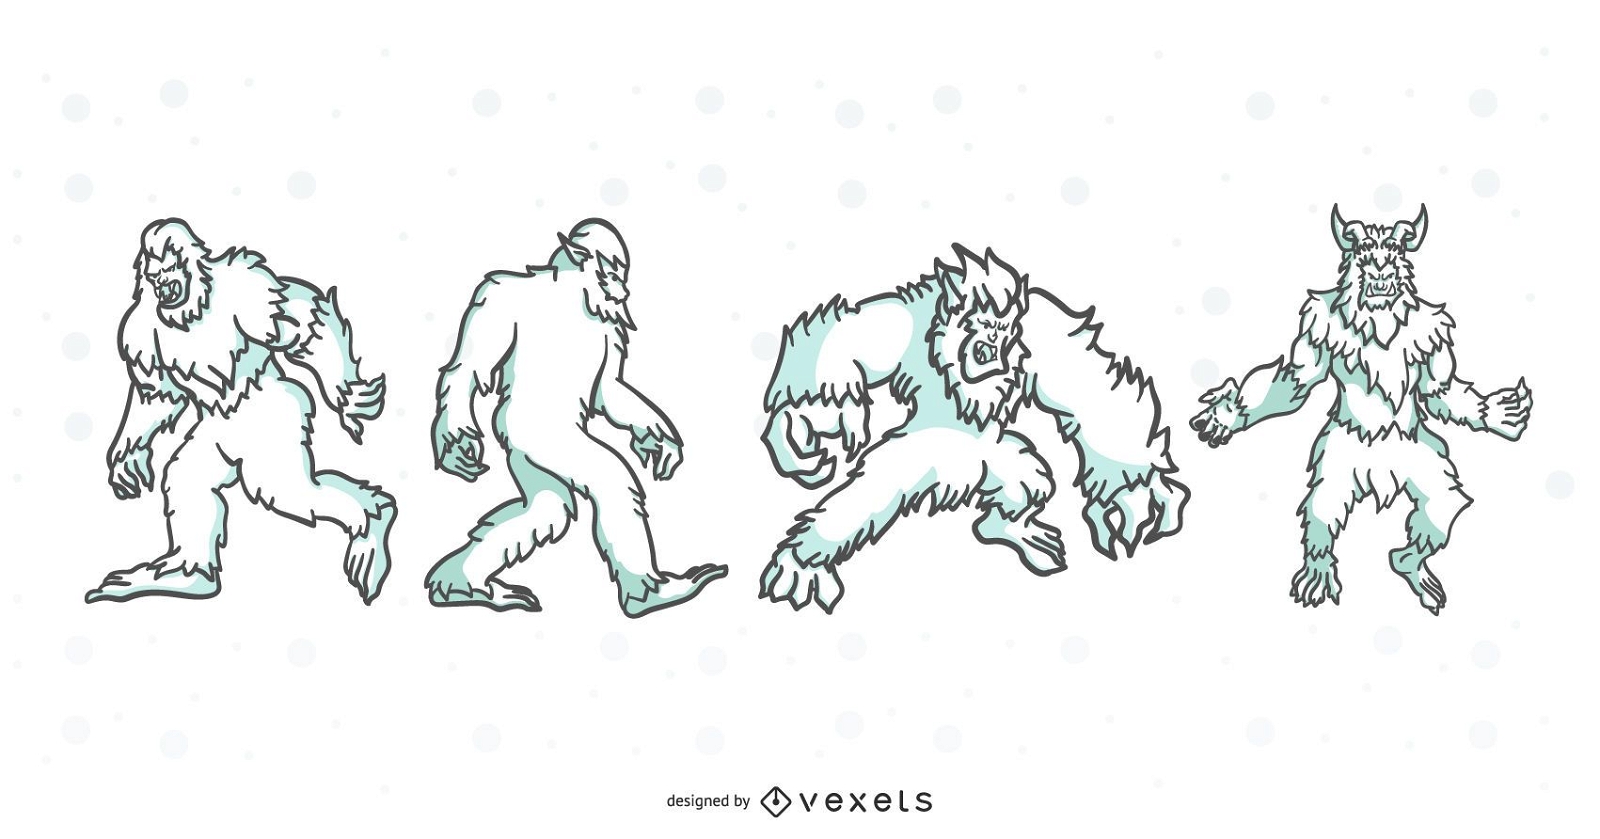 Folklore Creatures Stroke Illustration Set